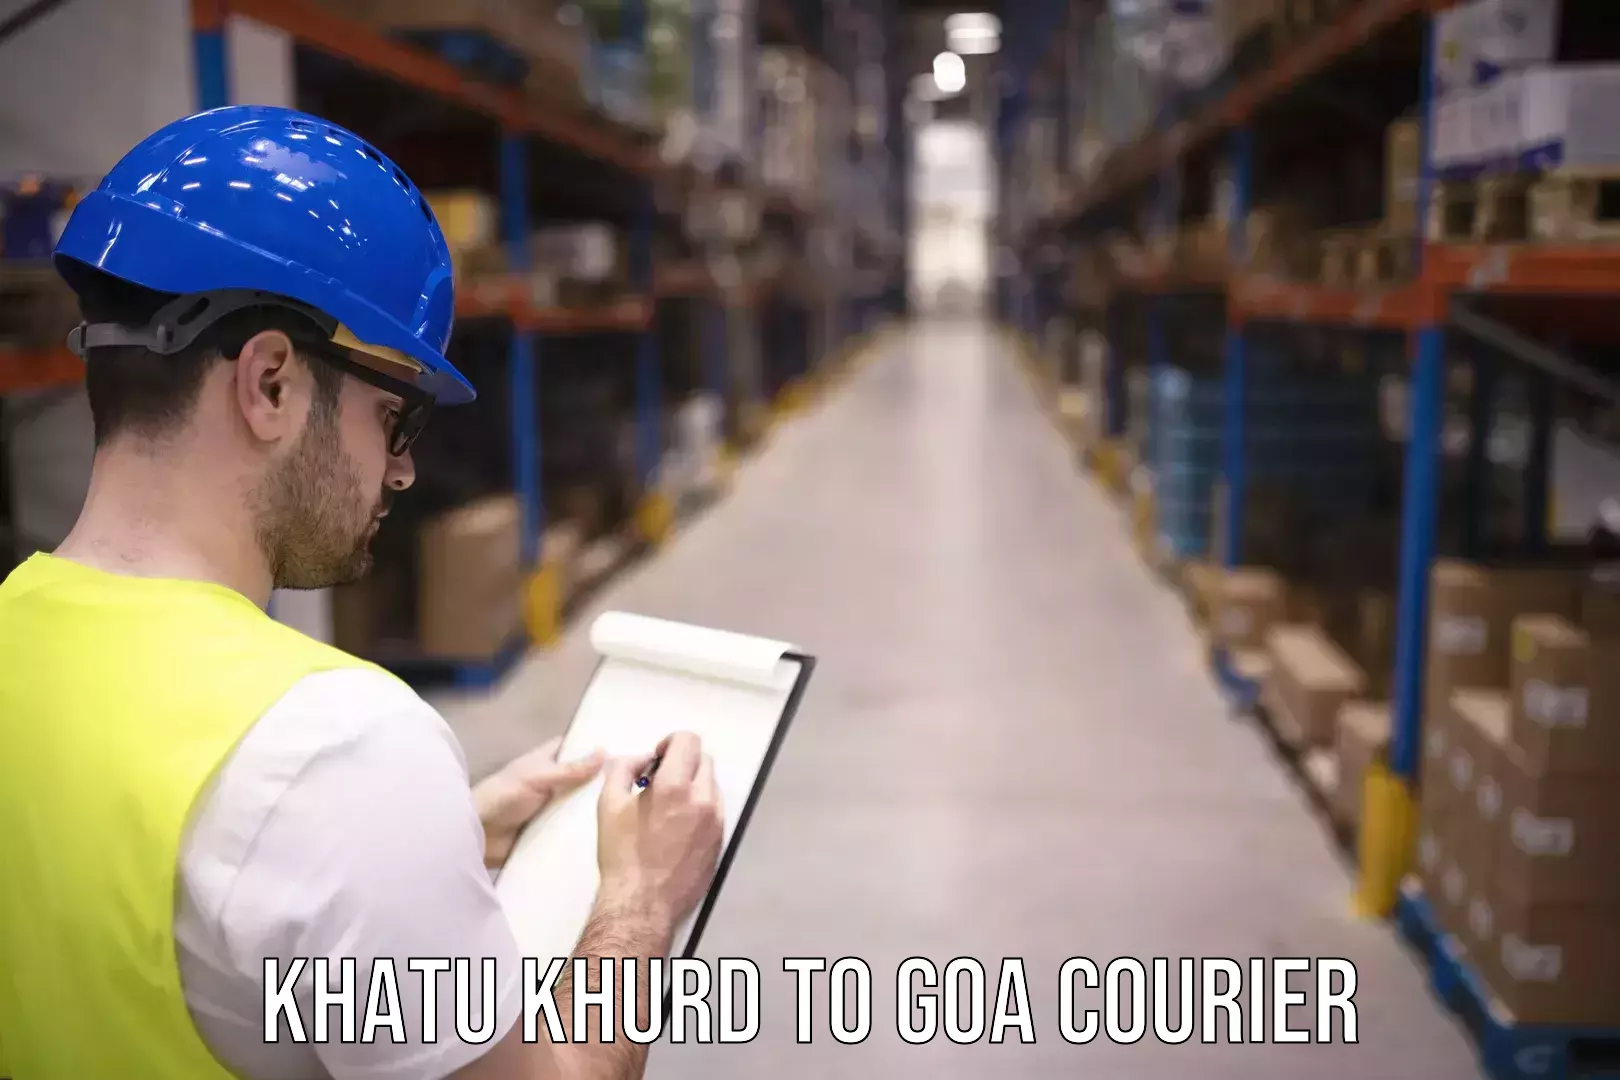 Courier service comparison Khatu Khurd to South Goa